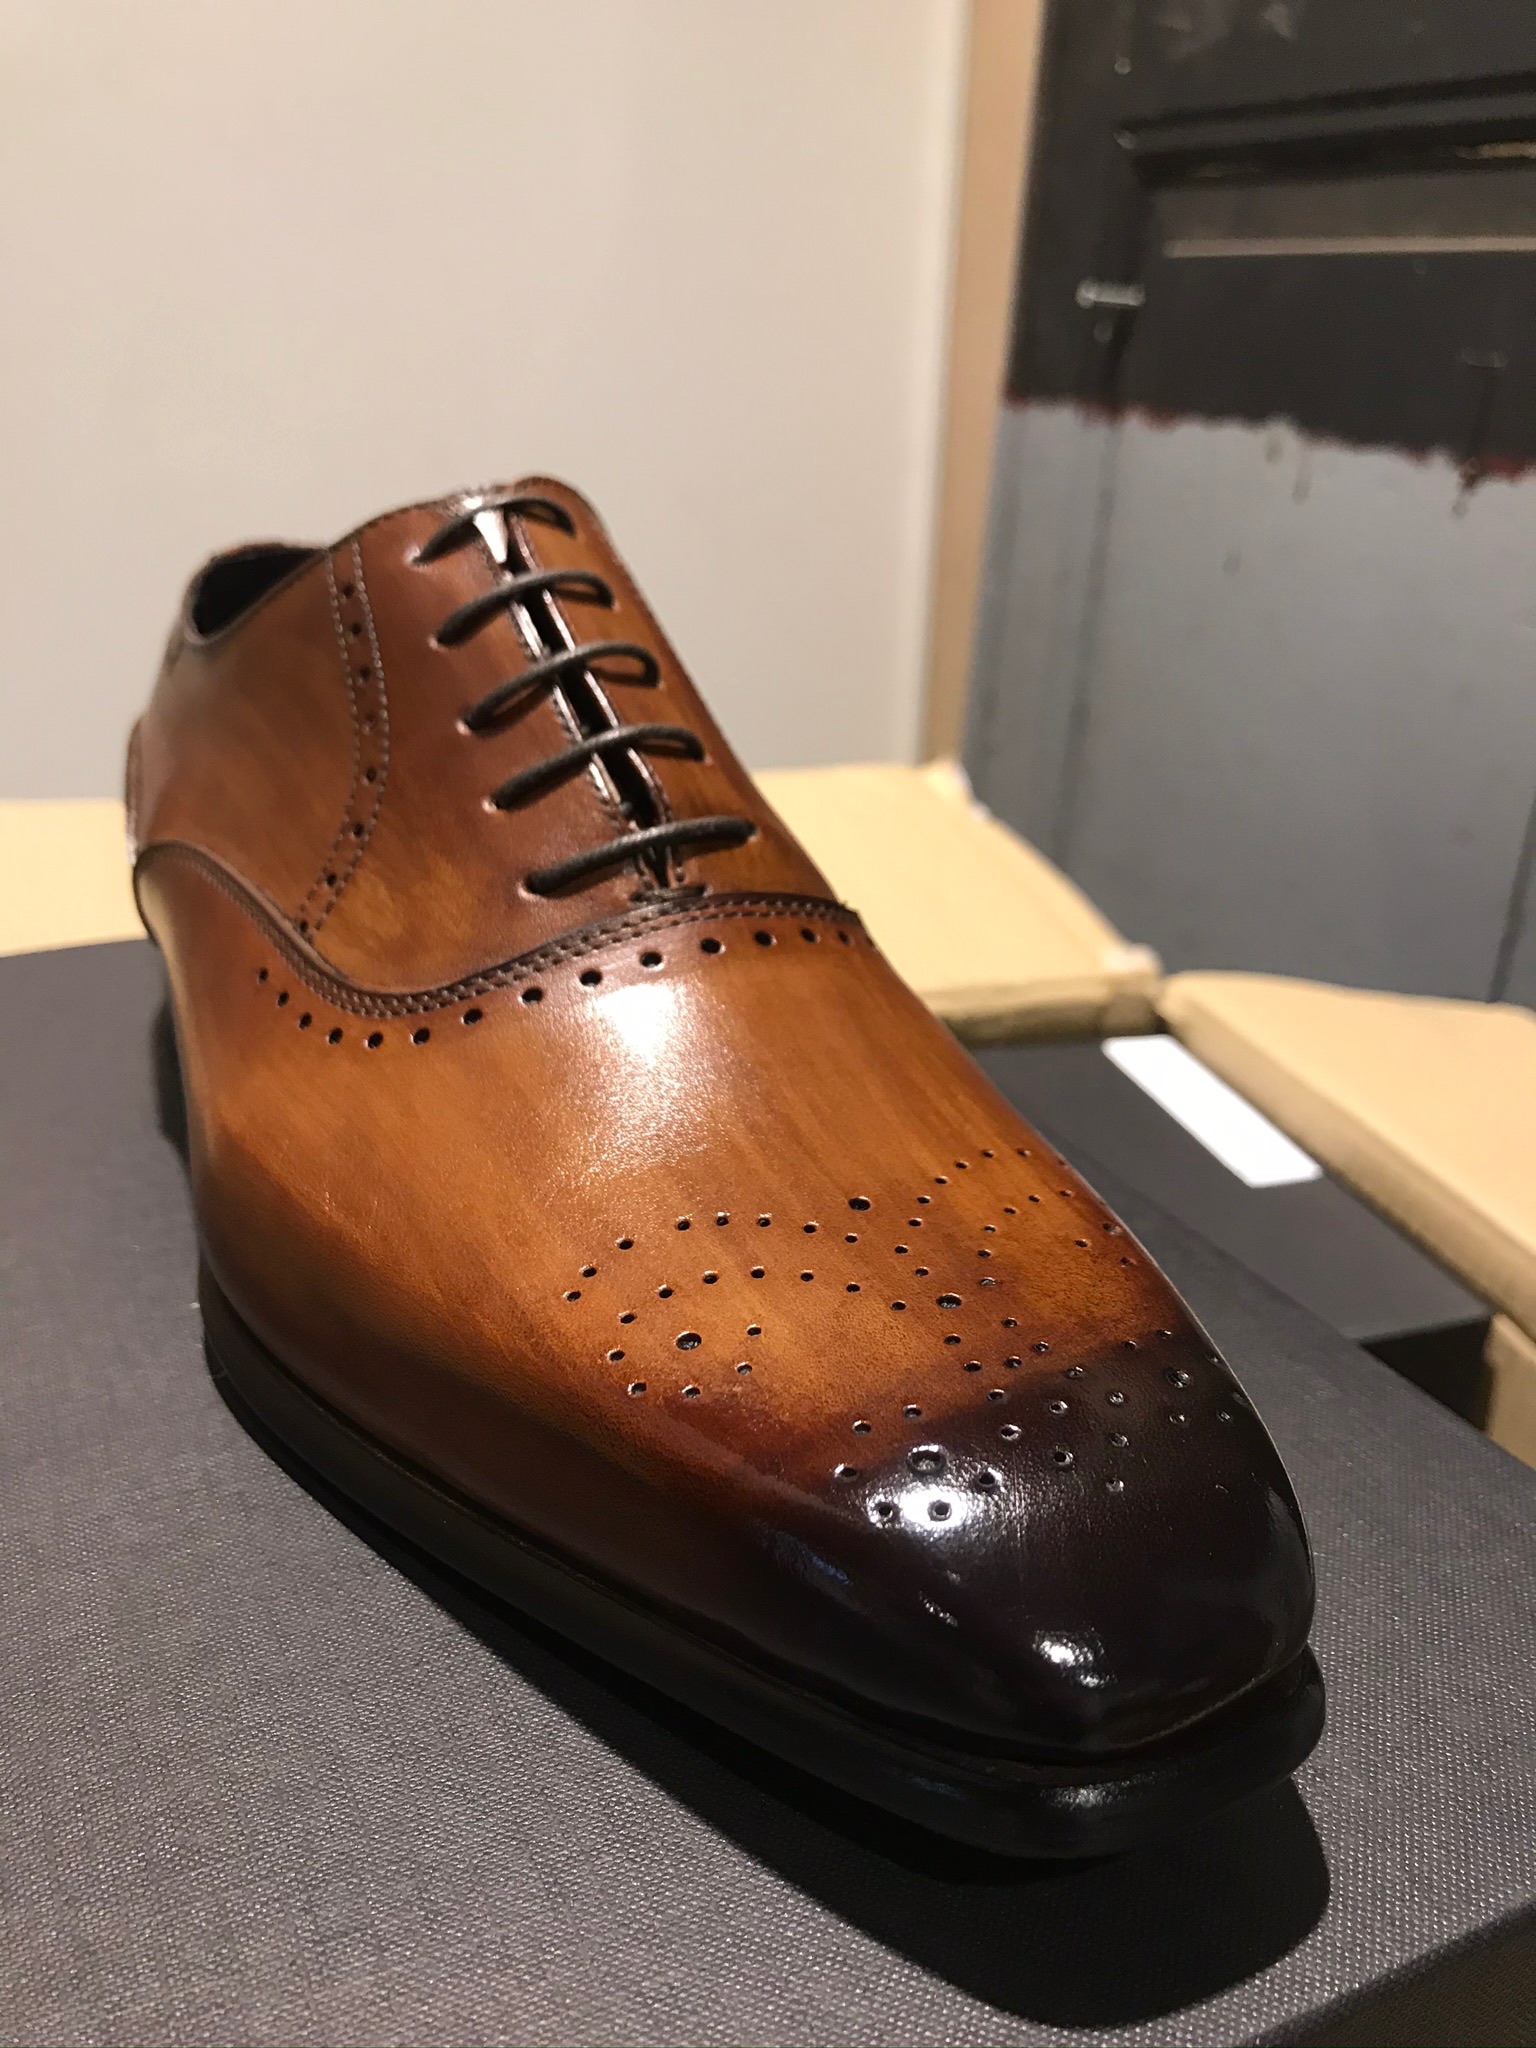 klep Knorretje aantal Laccio handgemaakte italiaanse schoen – Olav Herenmode